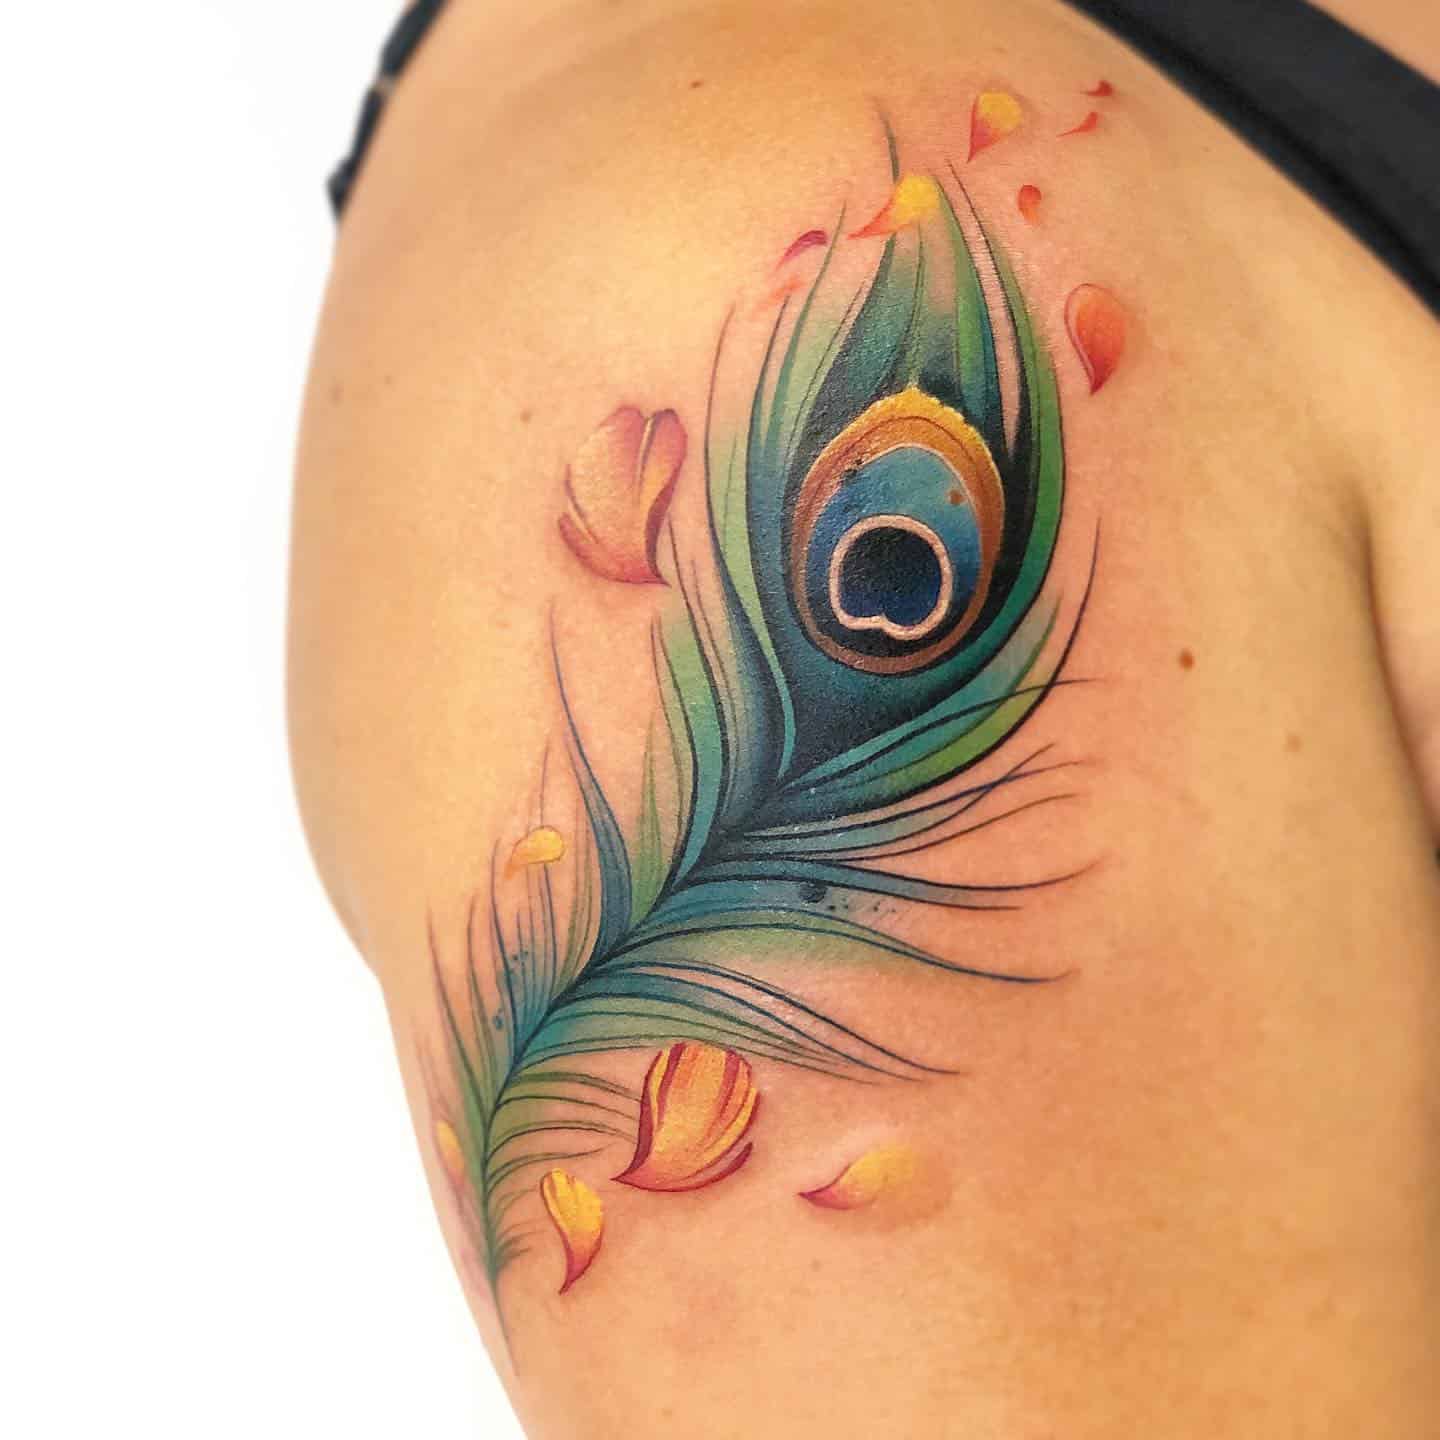 Peacock Feather Tattoo Ideas 2